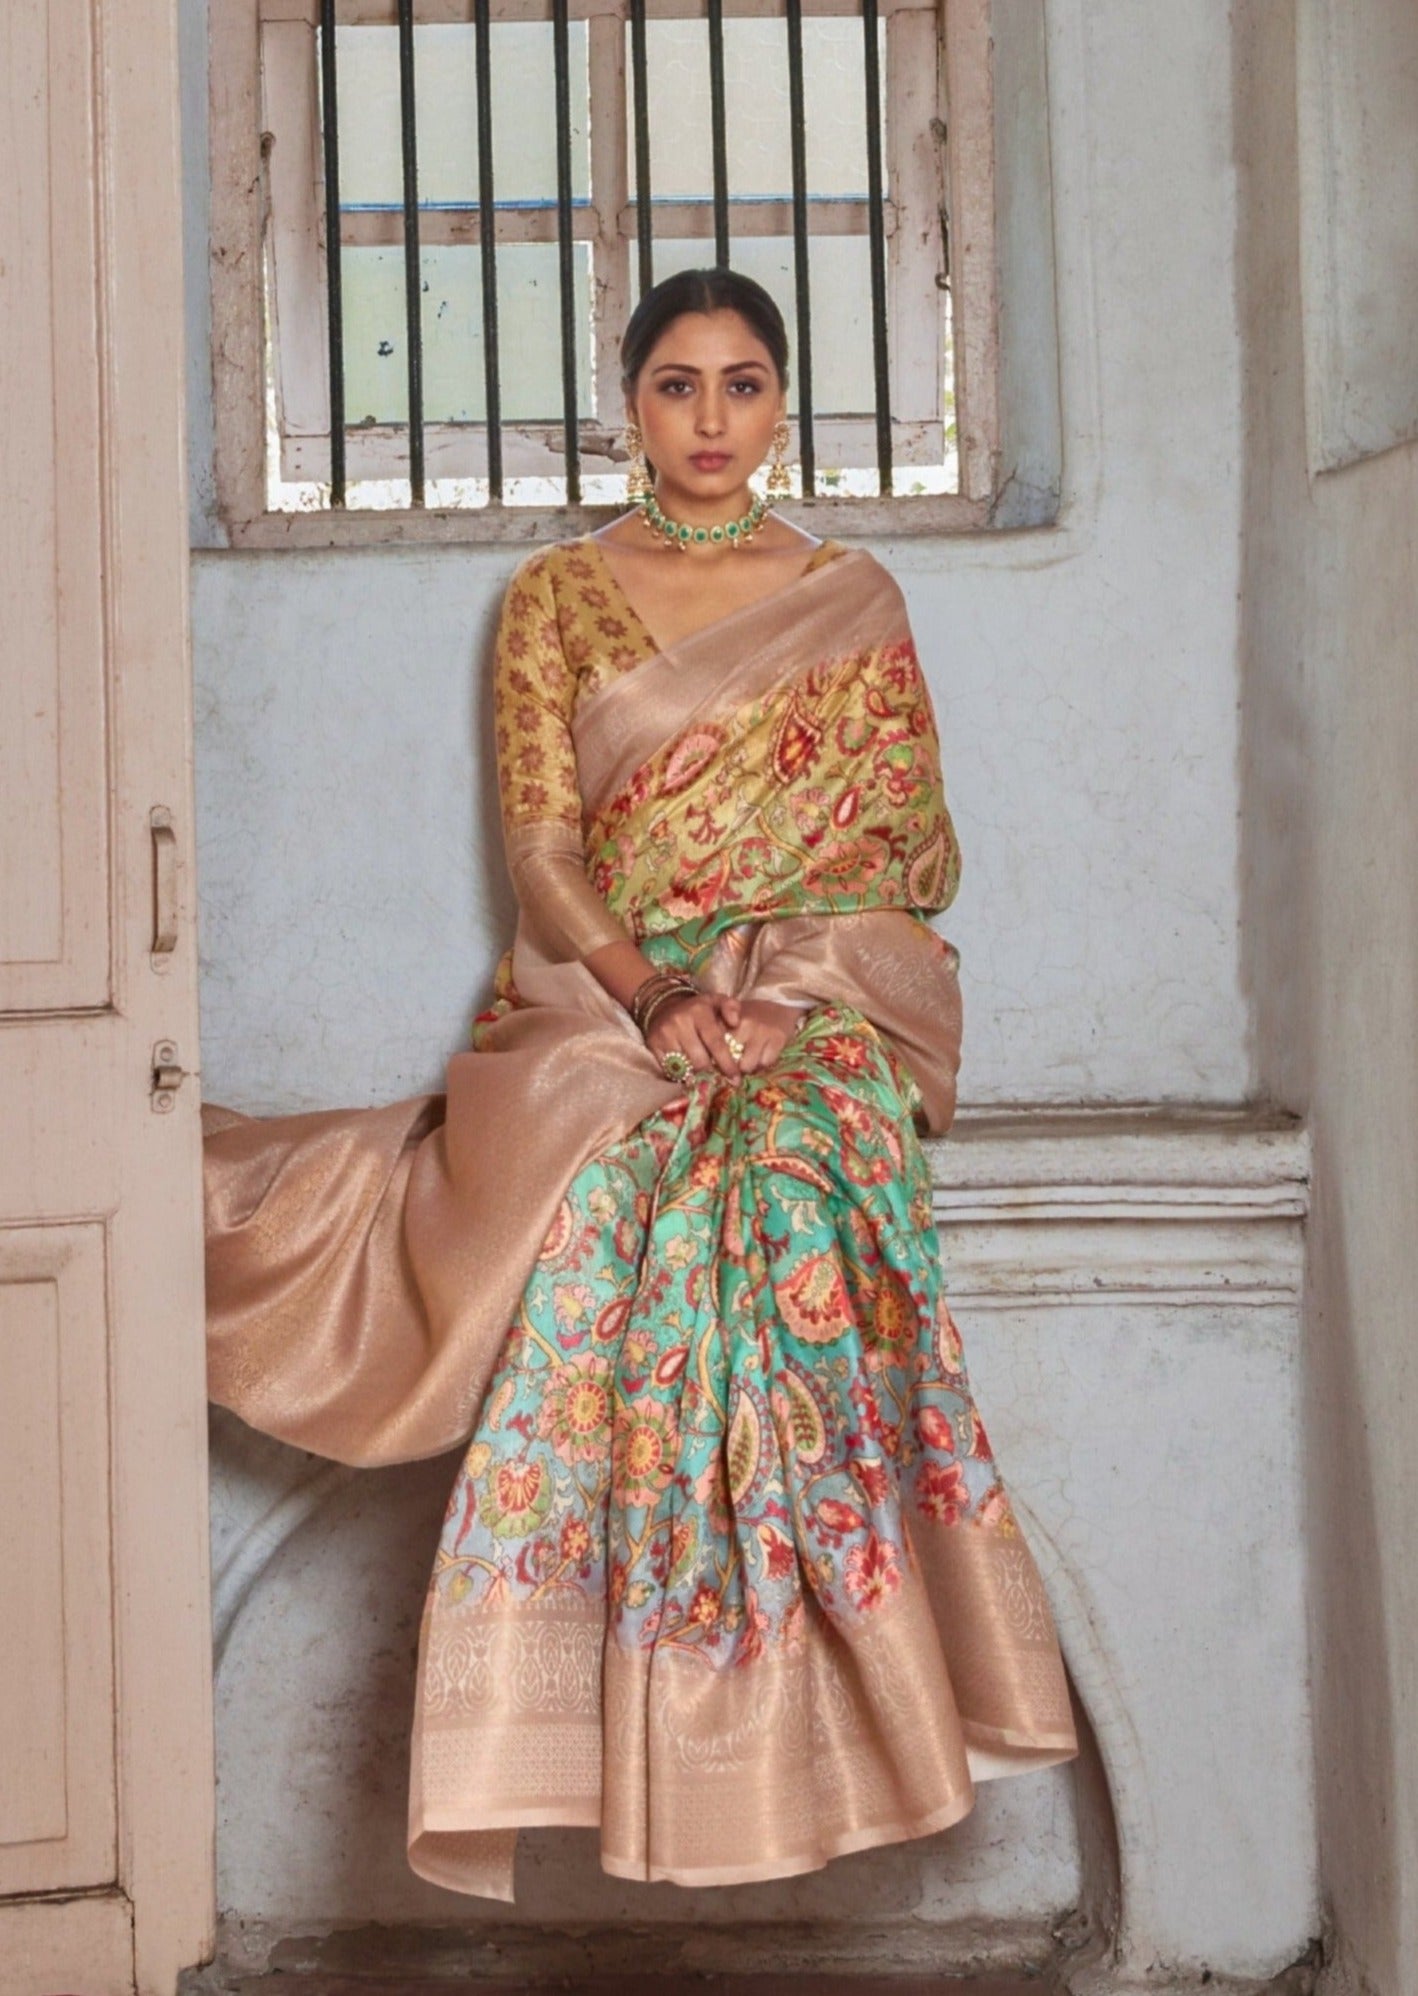 Woman sitting on bench wearing beige kalamkari saree with banarasi border